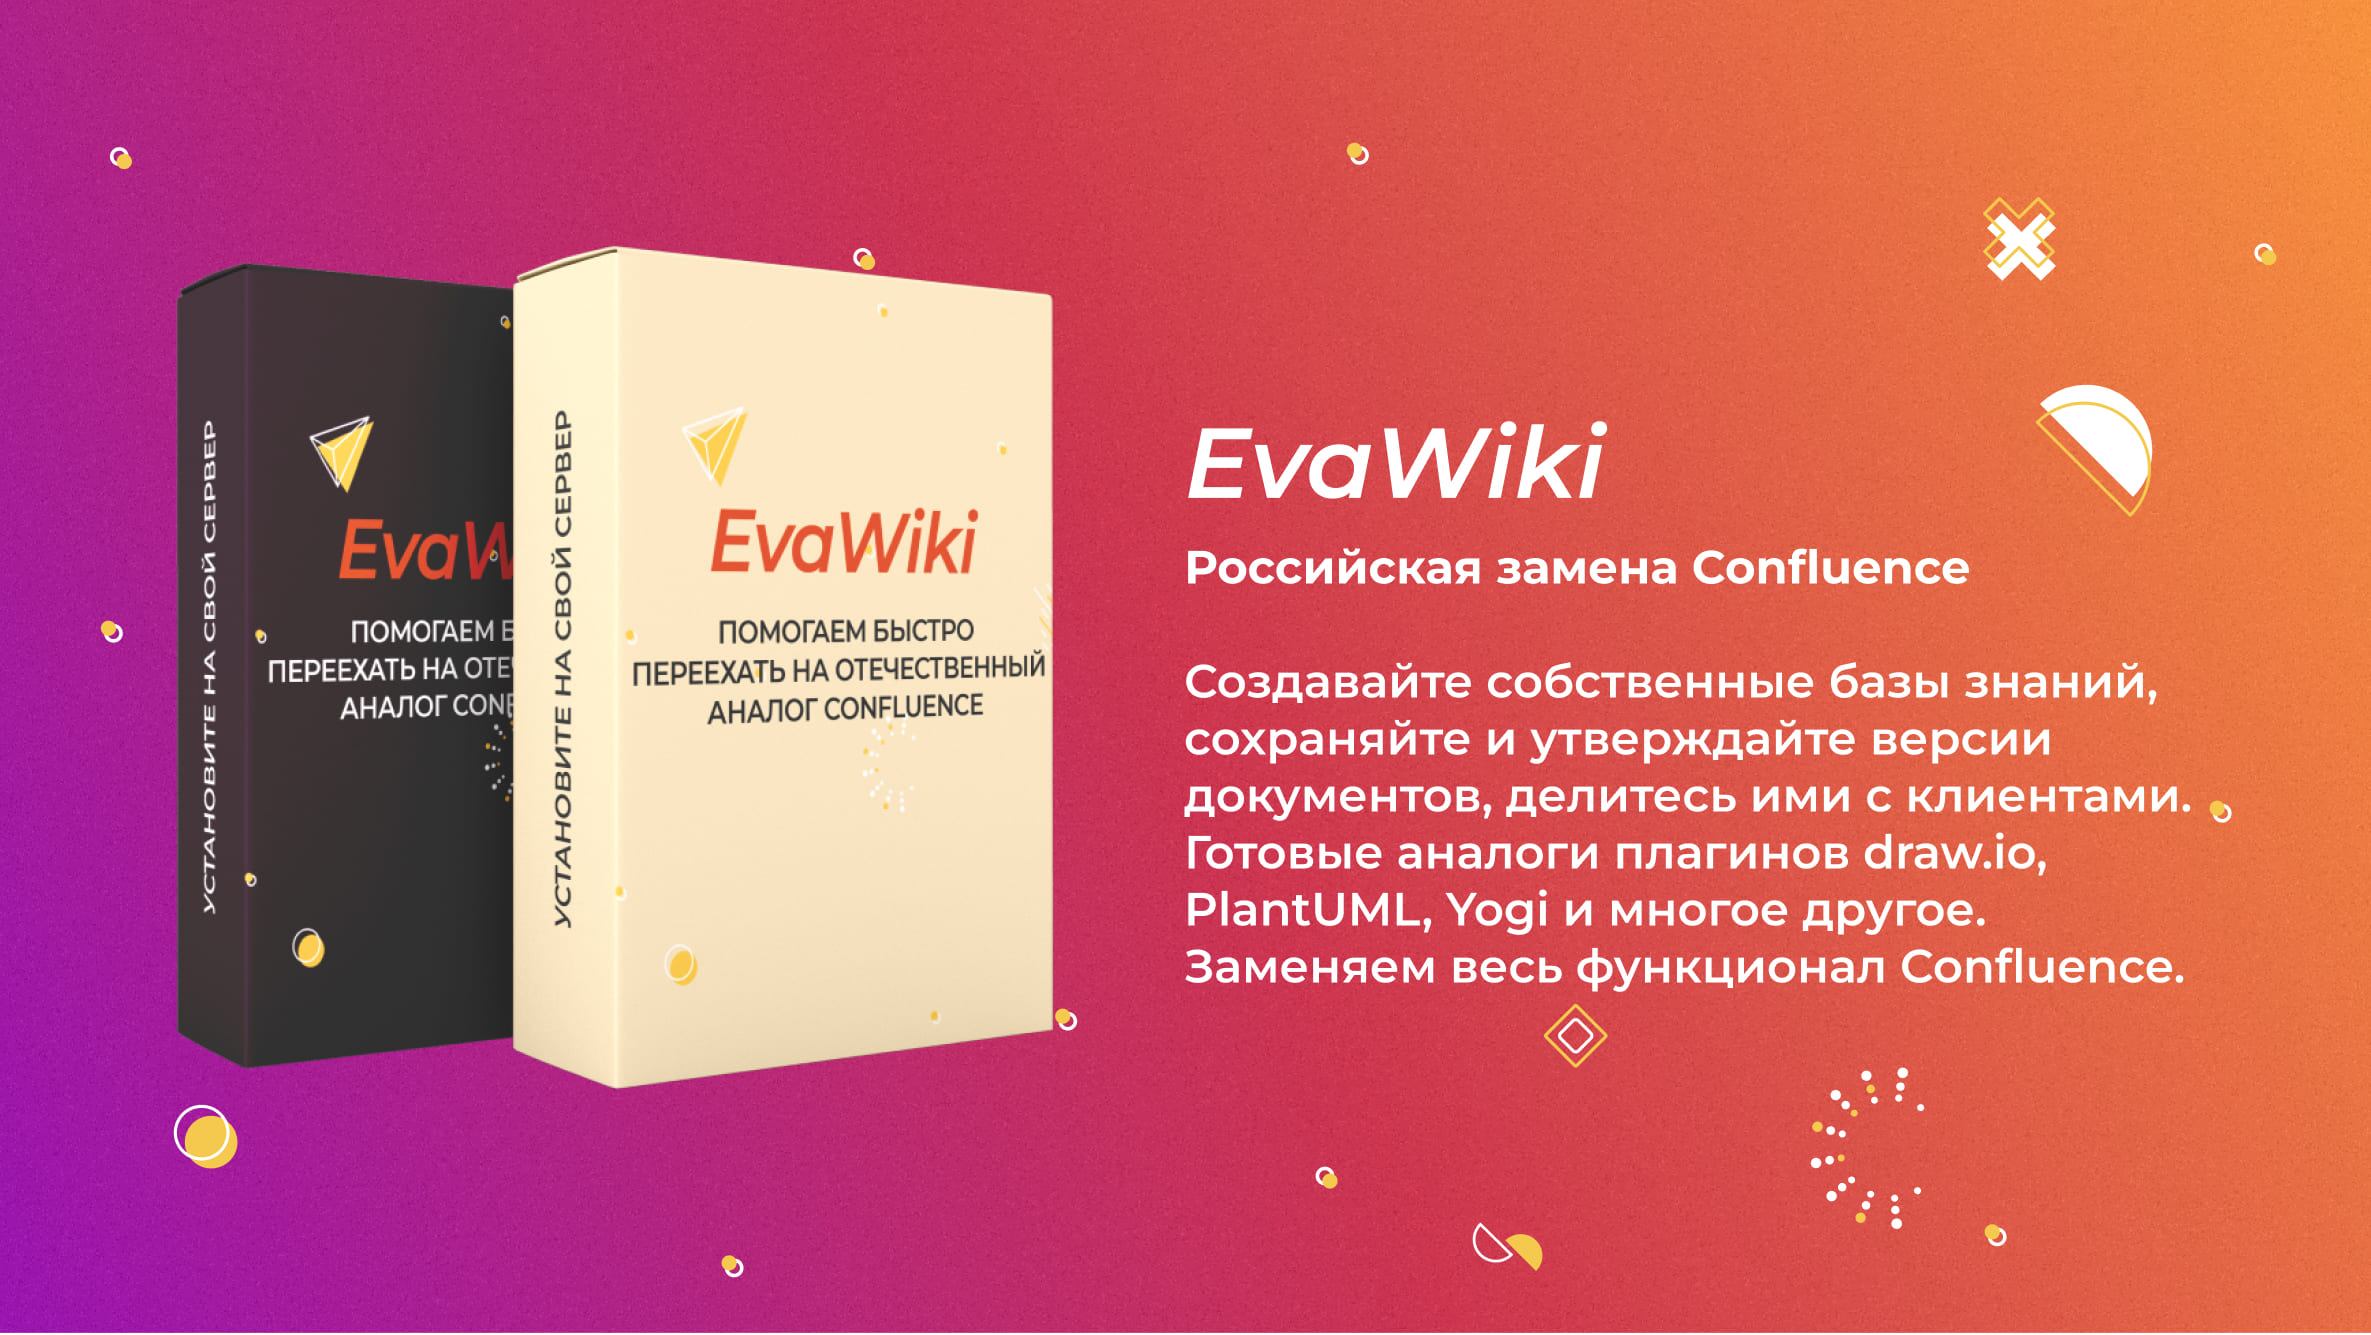 EvaWiki - российская замена Confluence